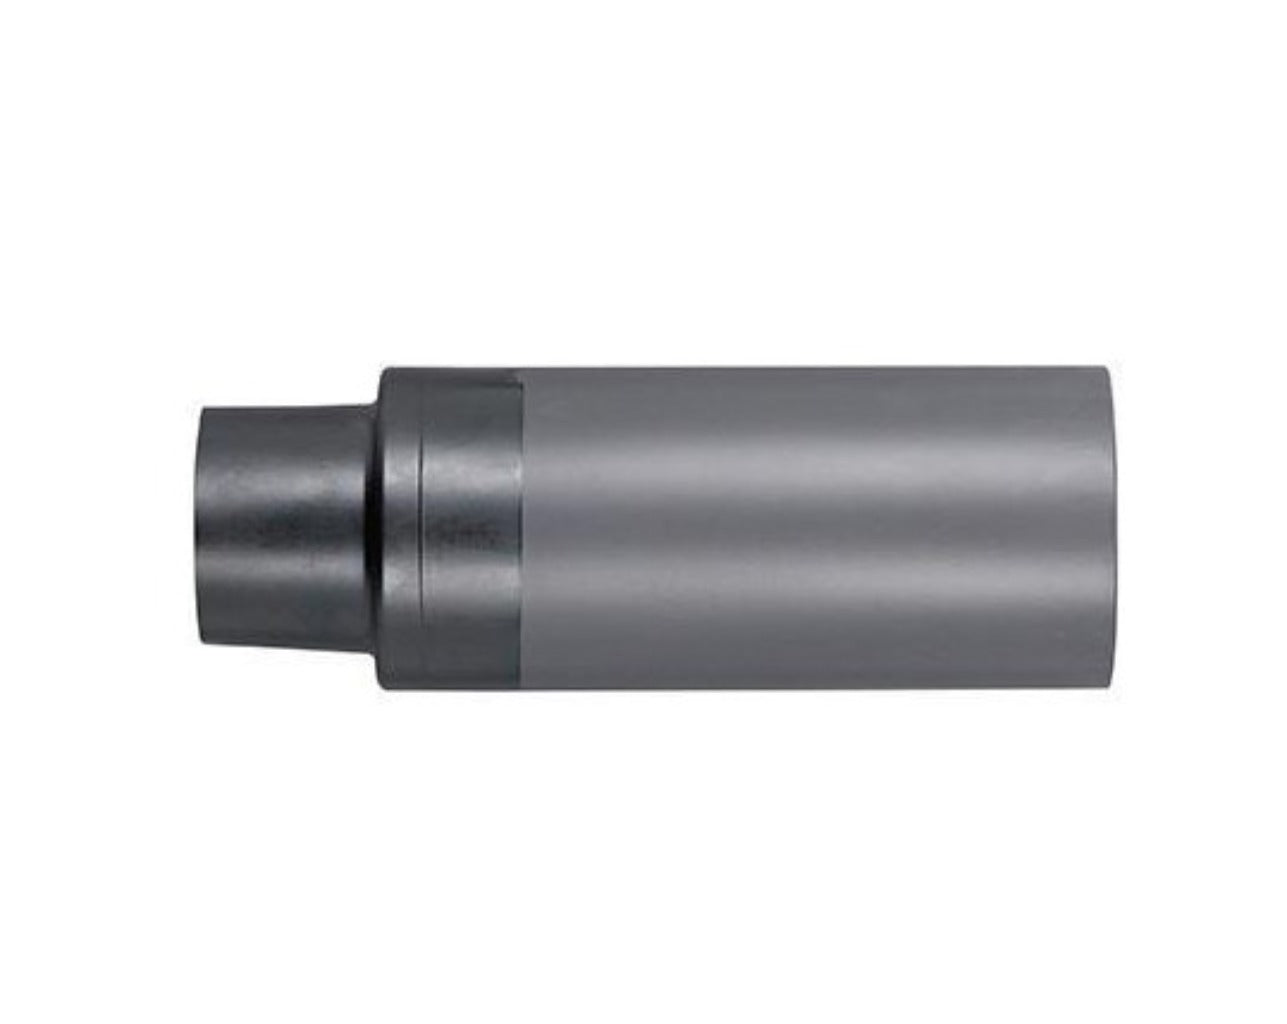 Tubo corrugado coflex 20mm reforzado (2j) libre de halógenos lh 7035:  información y PVP actual de Ref. 206996 de BASOR